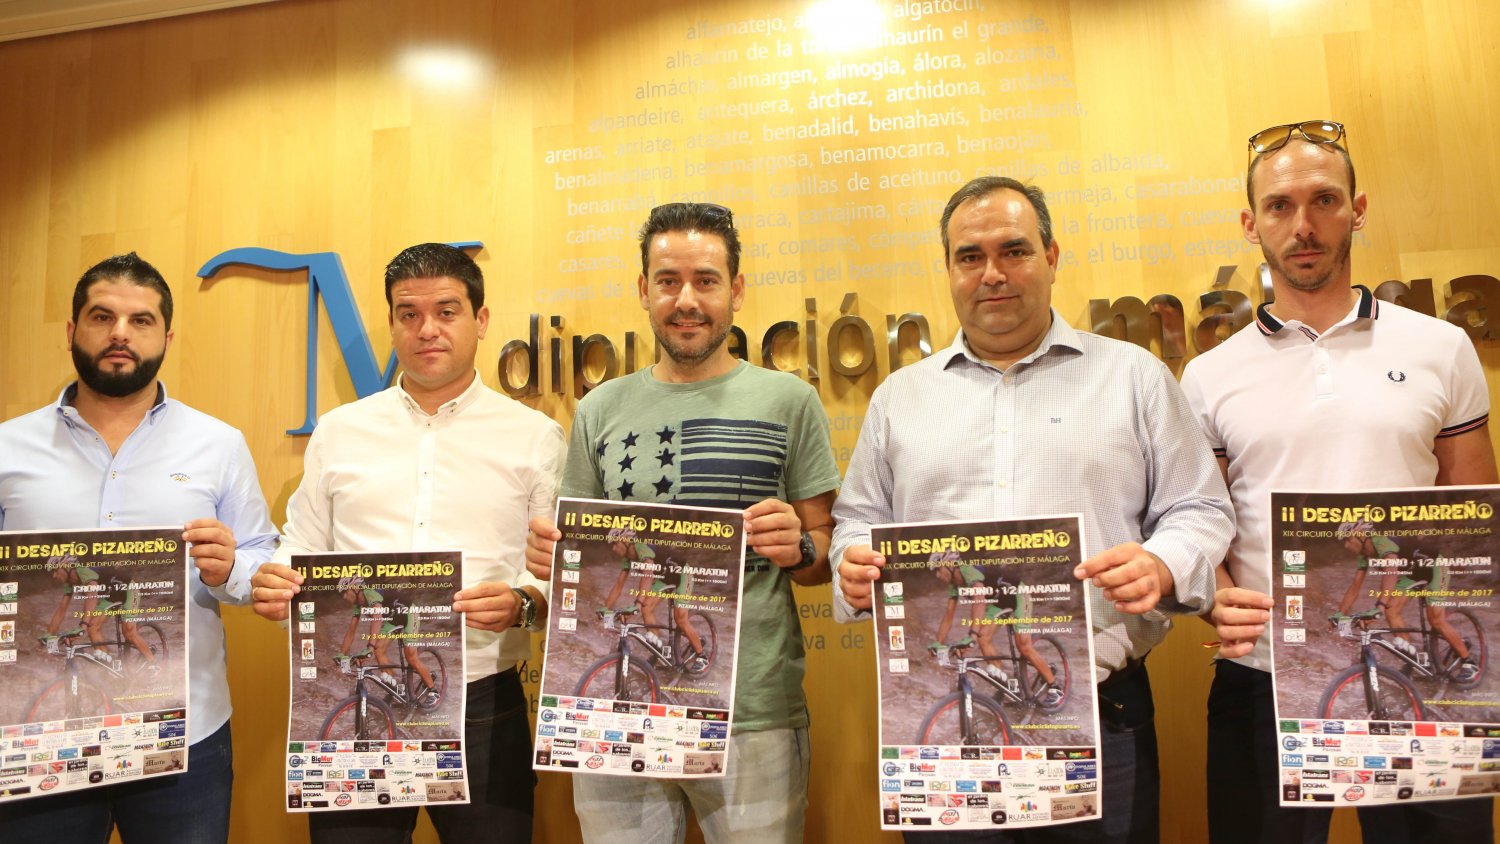 La segunda edición del Desafío Pizarreño reunirá a los ciclistas más importantes del panorama nacional